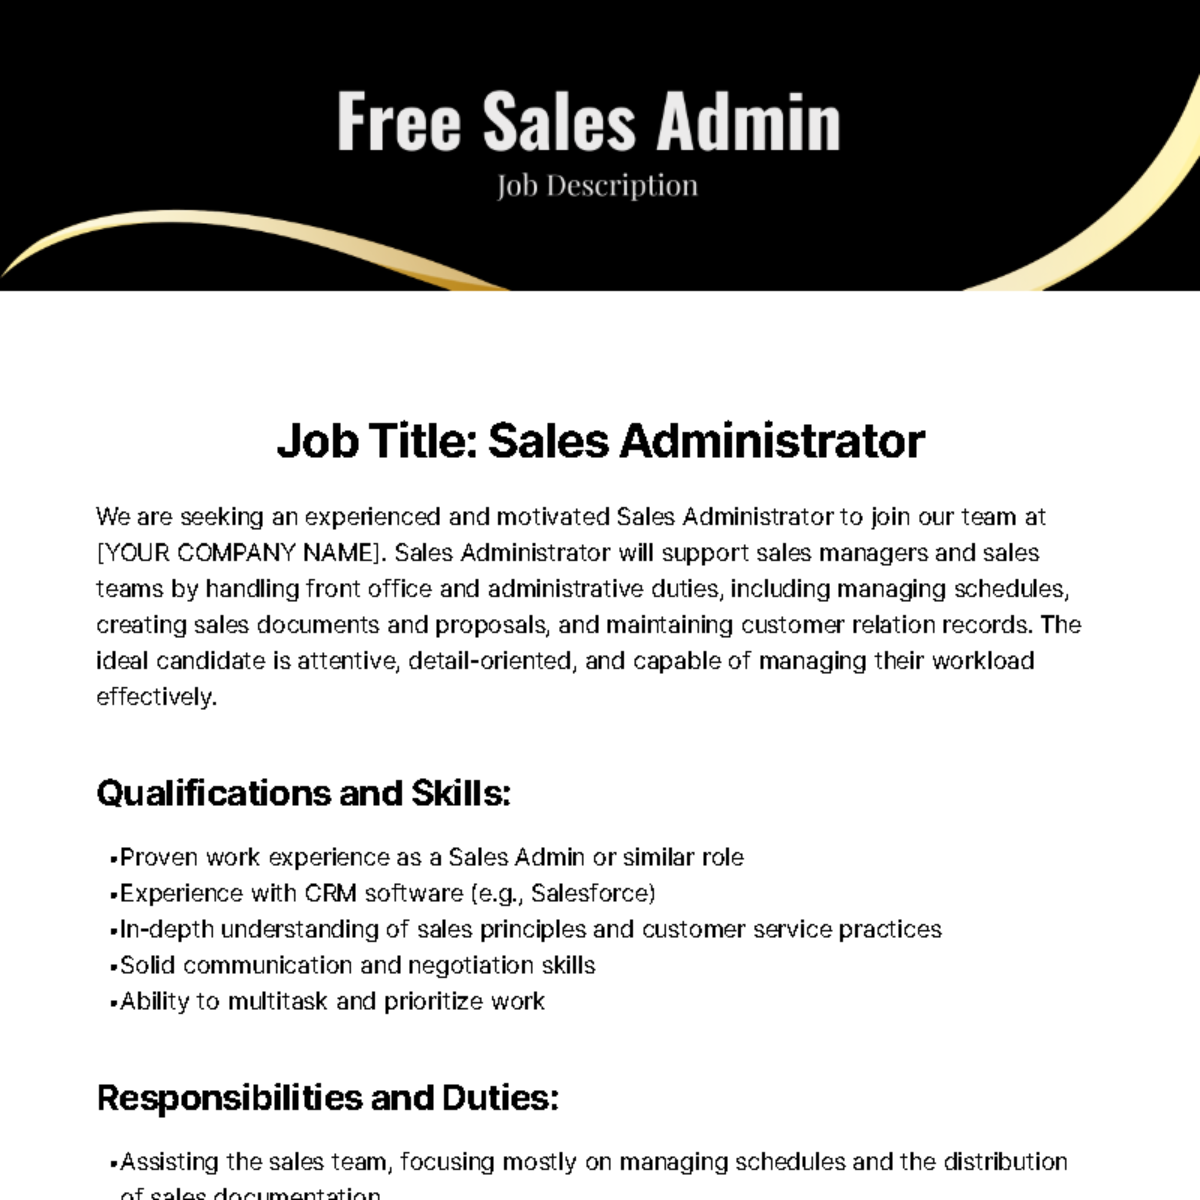 Free Sales Admin Job Description Template